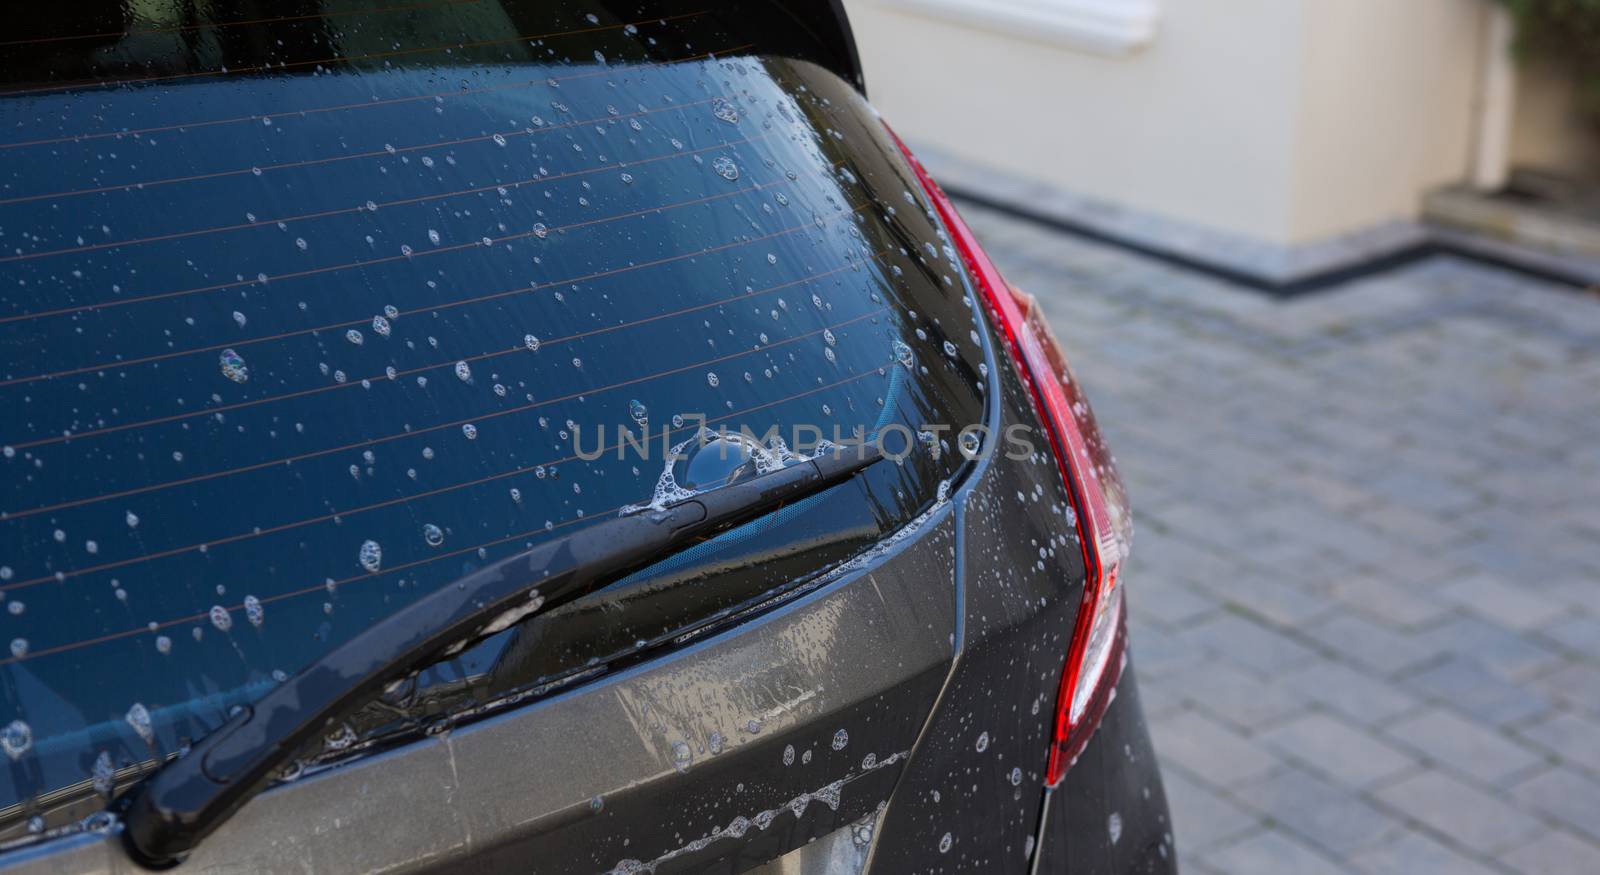 Half washed car with soap foam by Wavebreakmedia